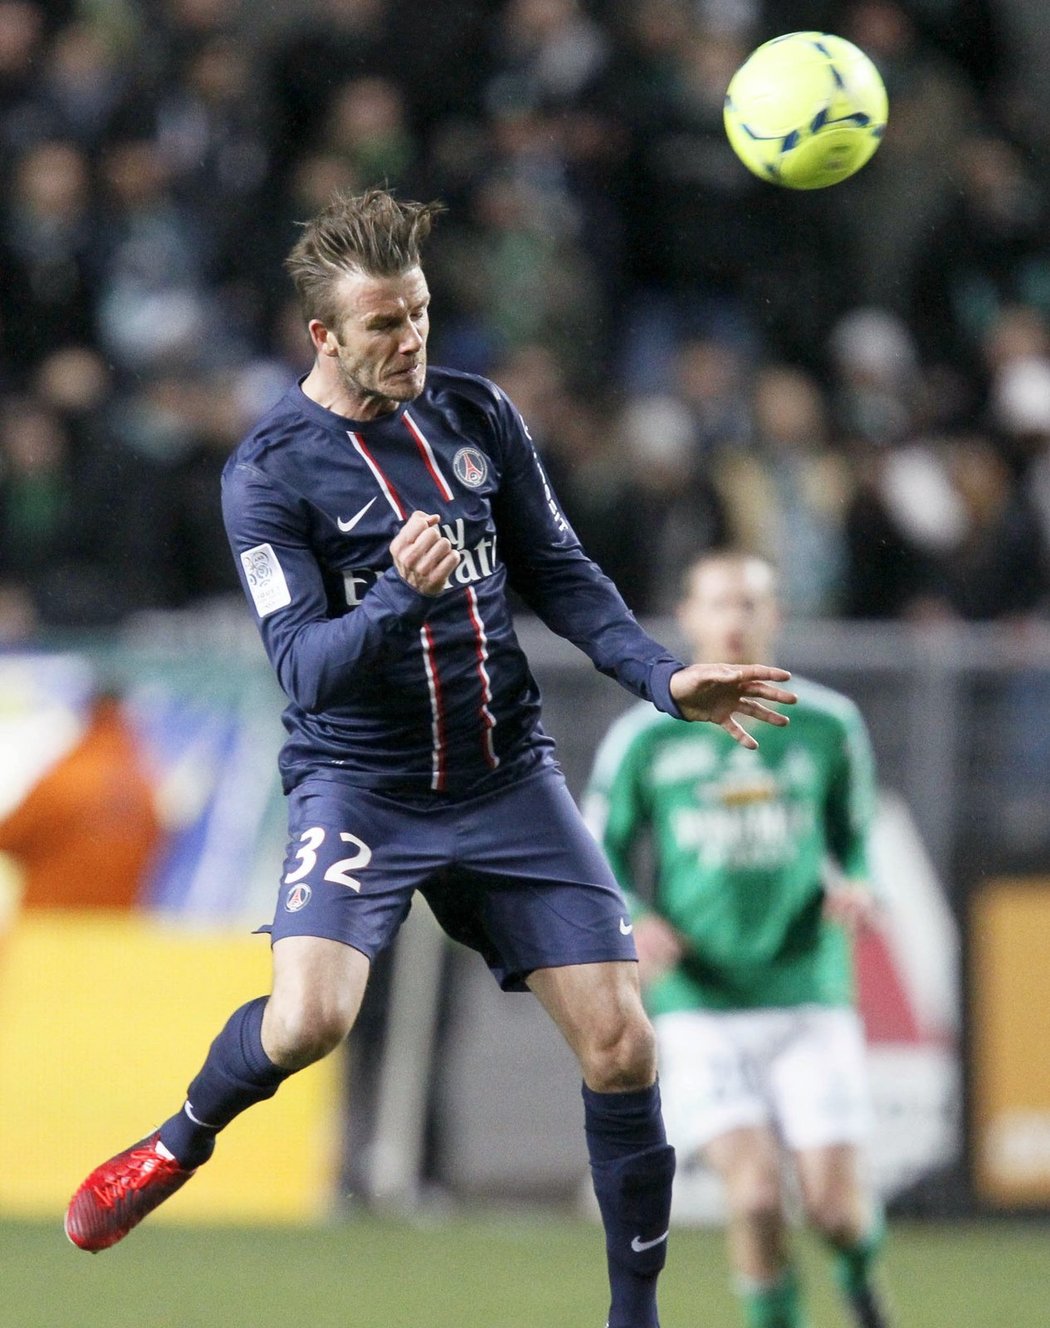 David Beckham dal proti Saint-Étienne vzpomenout na patnáct let starý hřích z MS 1998, kdy se nechal vyloučit